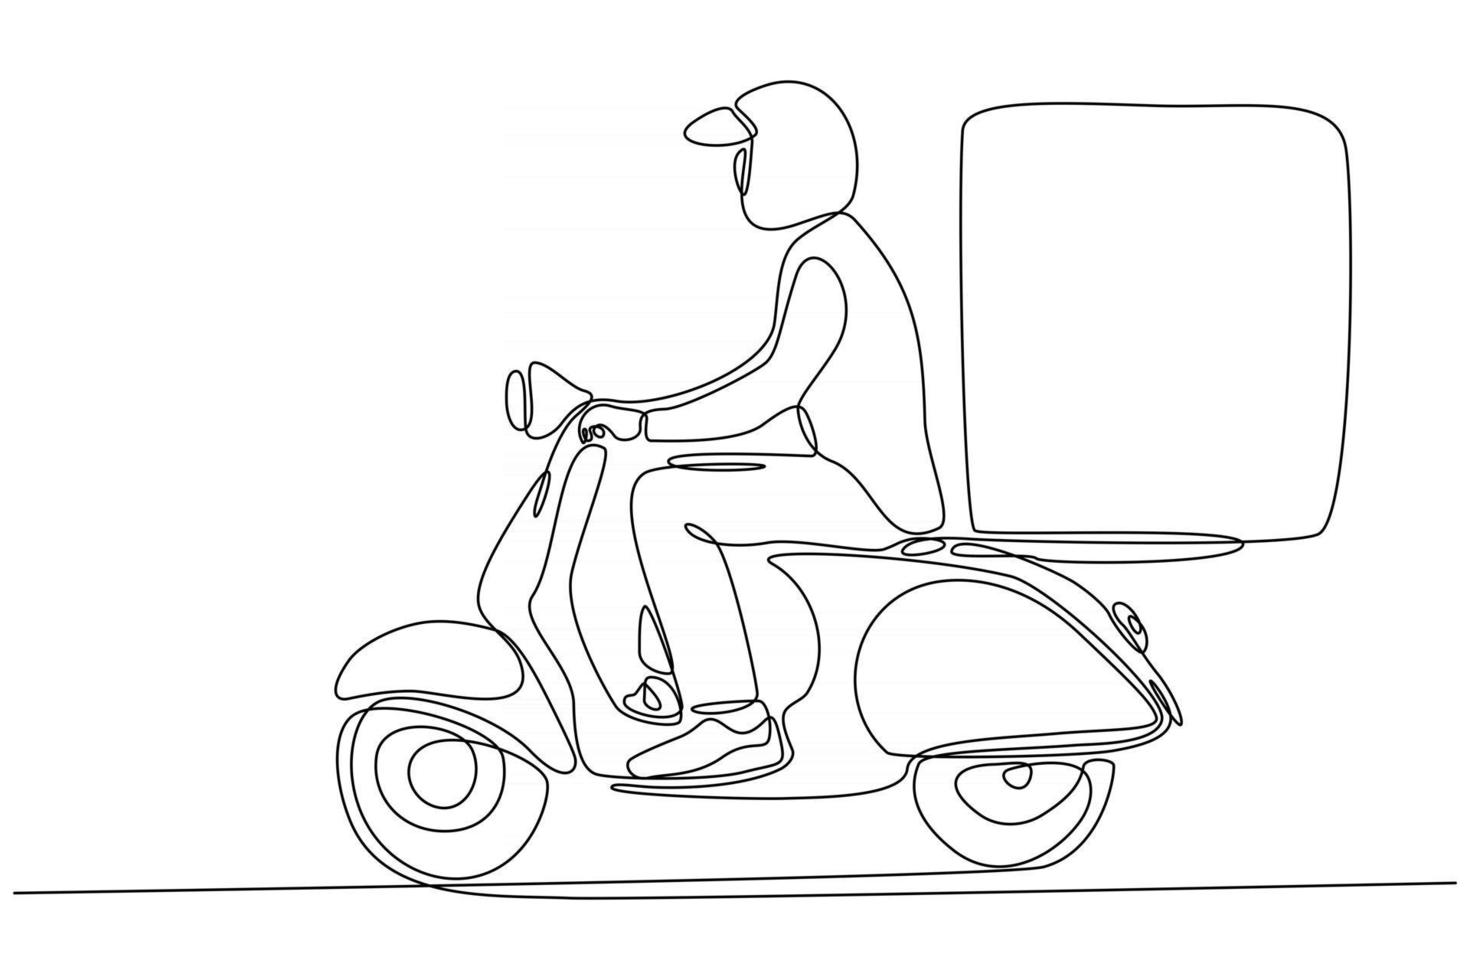 dibujo de línea continua de mensajería entregando pedidos en motos ilustración vectorial vector